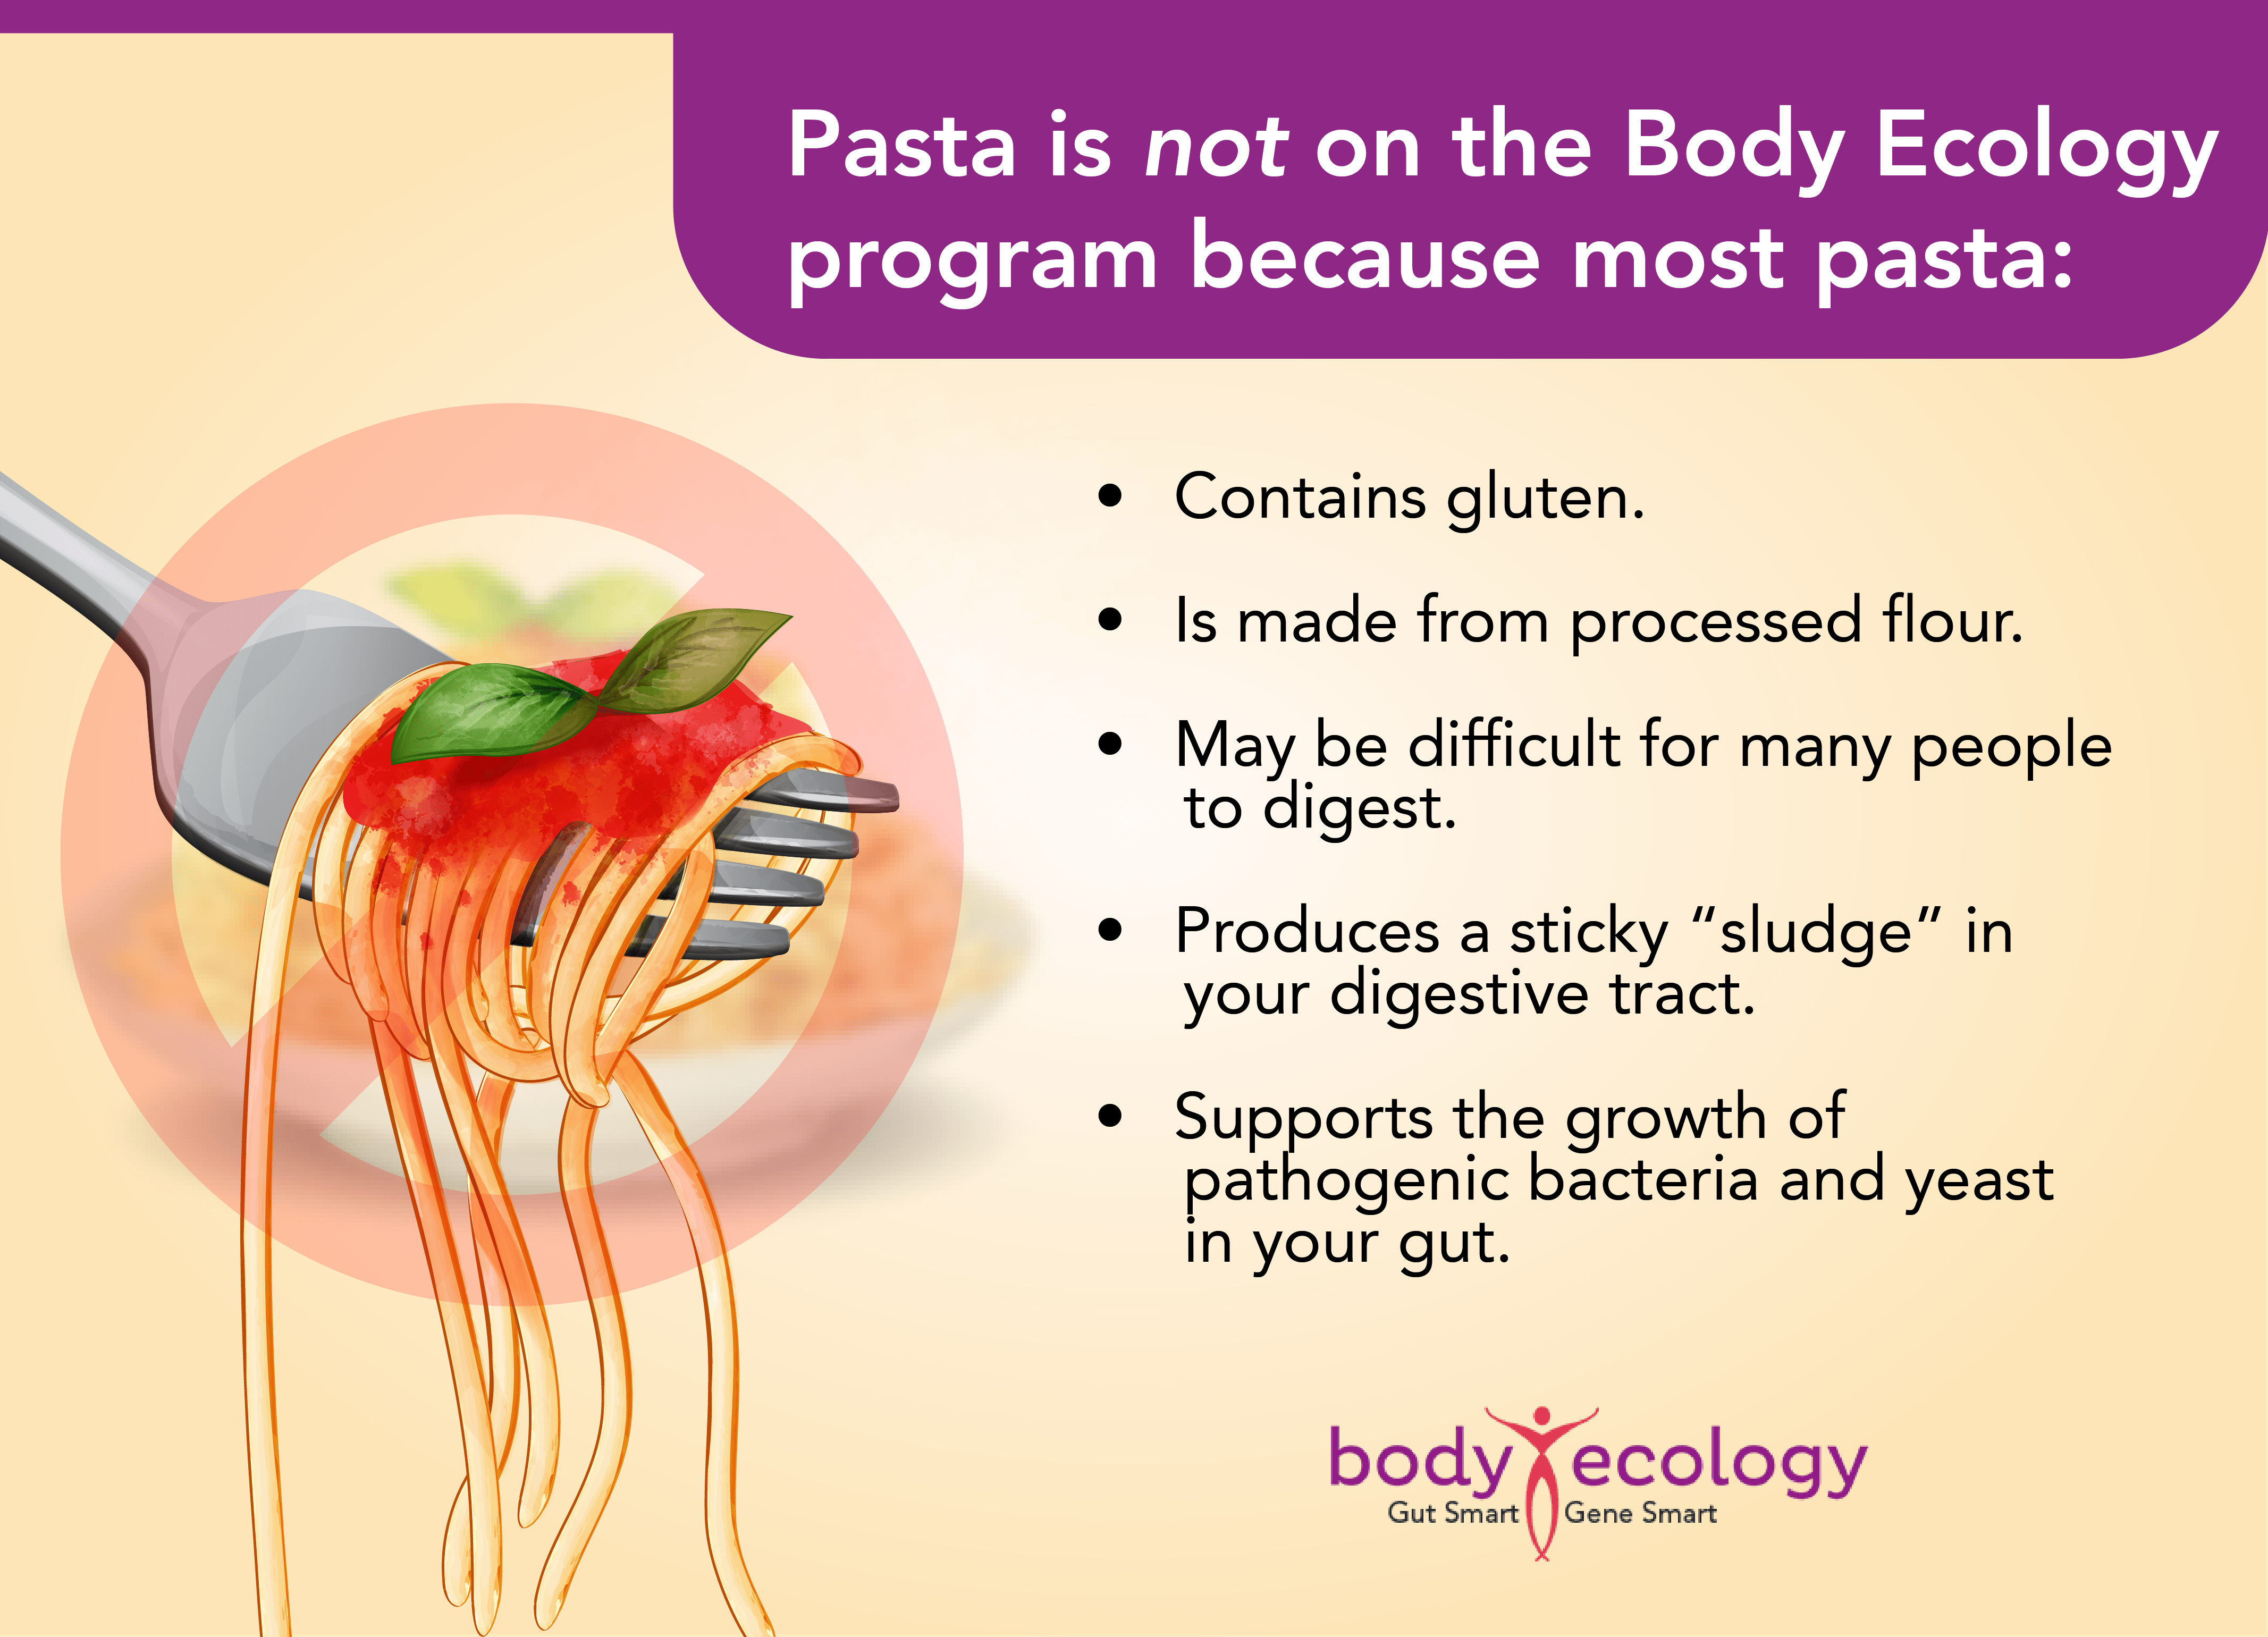 healthy pasta